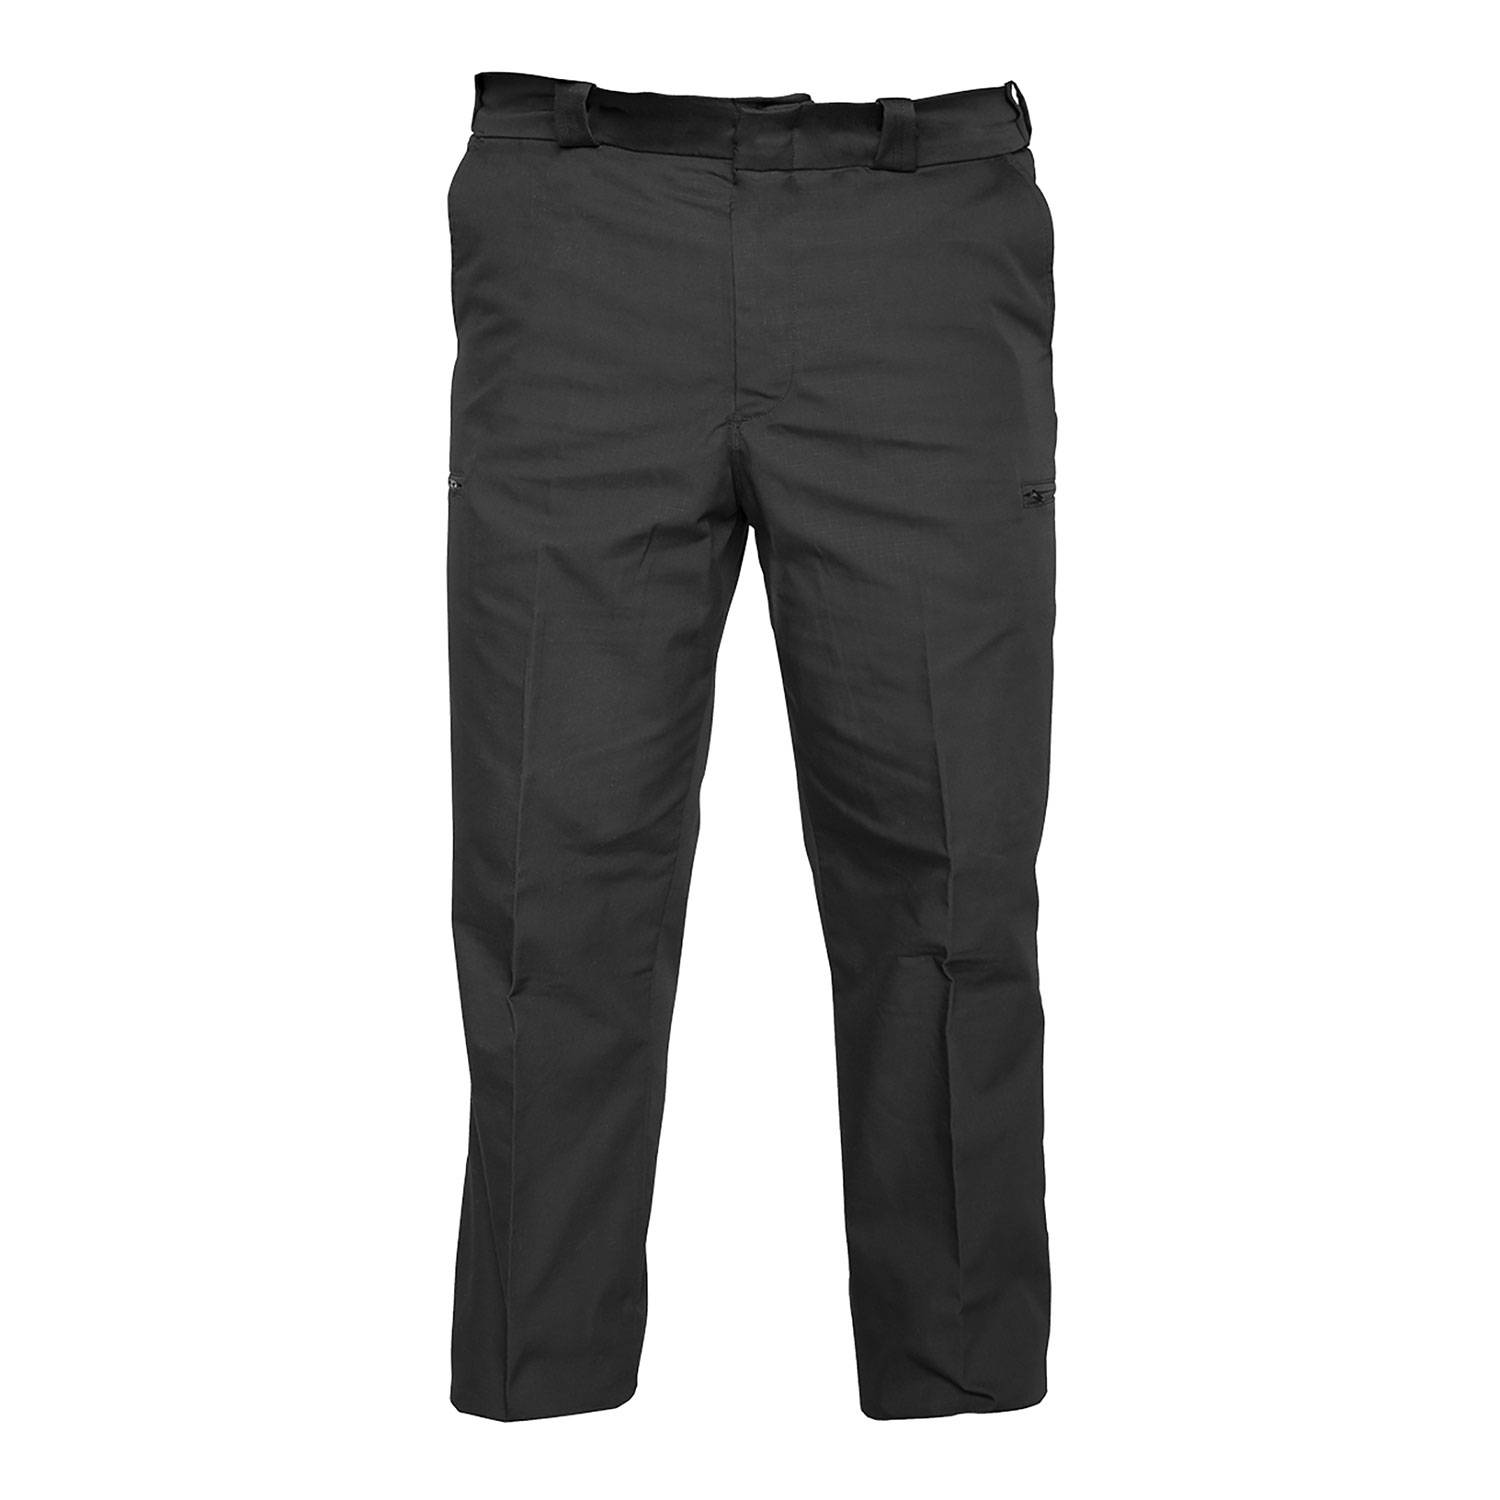 Elbeco Women’s Reflex Hidden Cargo Pocket Trousers